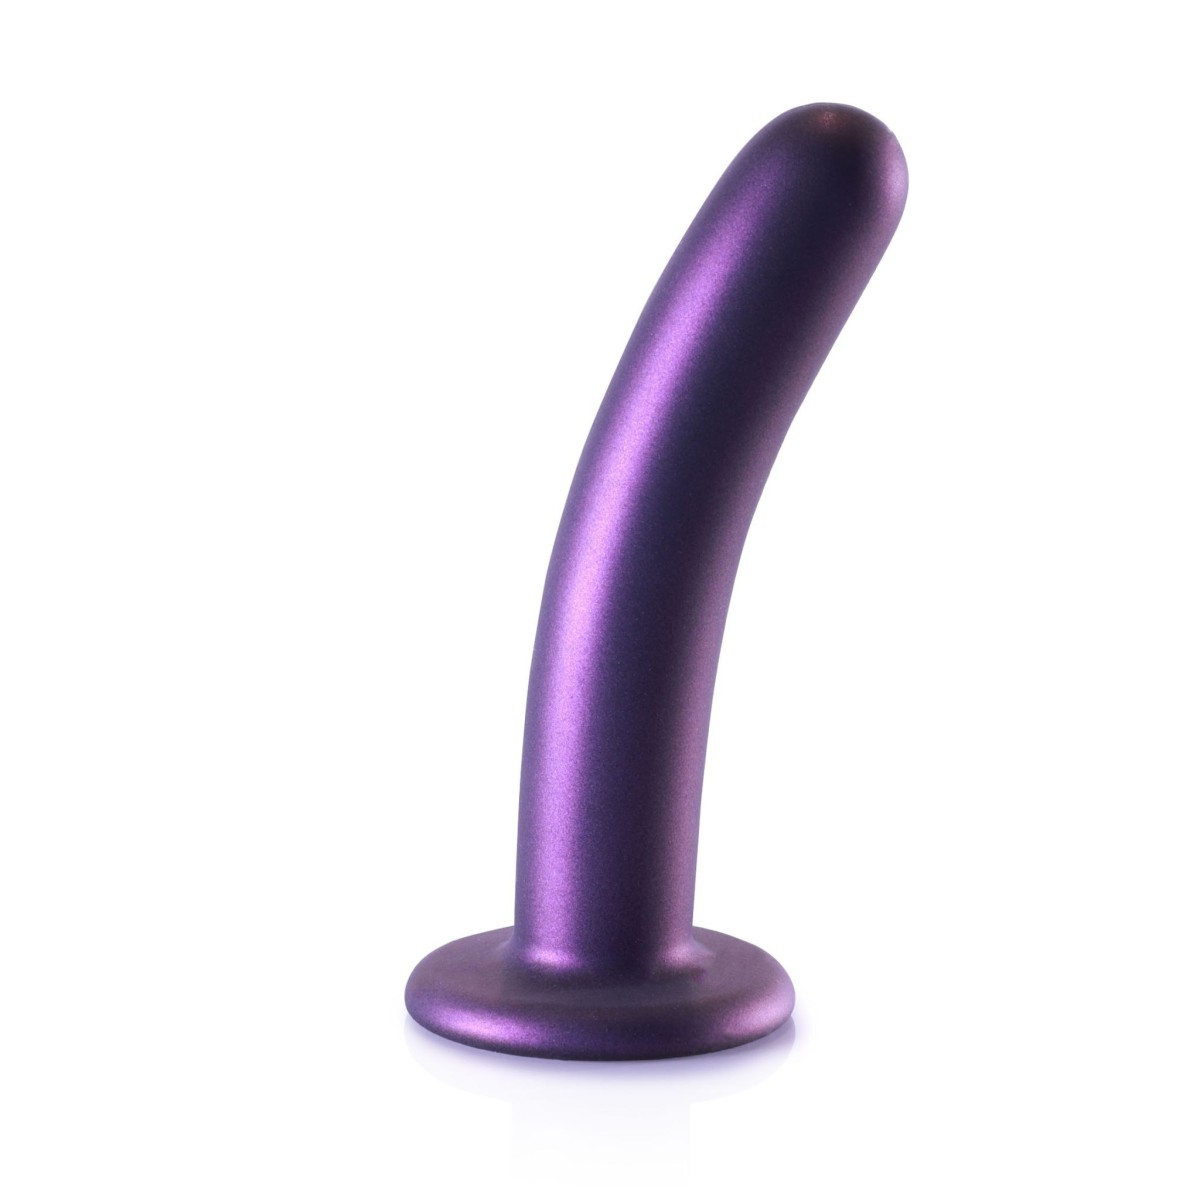 Dildo Ouch! Smooth Silicone G-Spot Dildo 6" Purple, silikonové dildo s přísavkou 15 x 2,9 cm